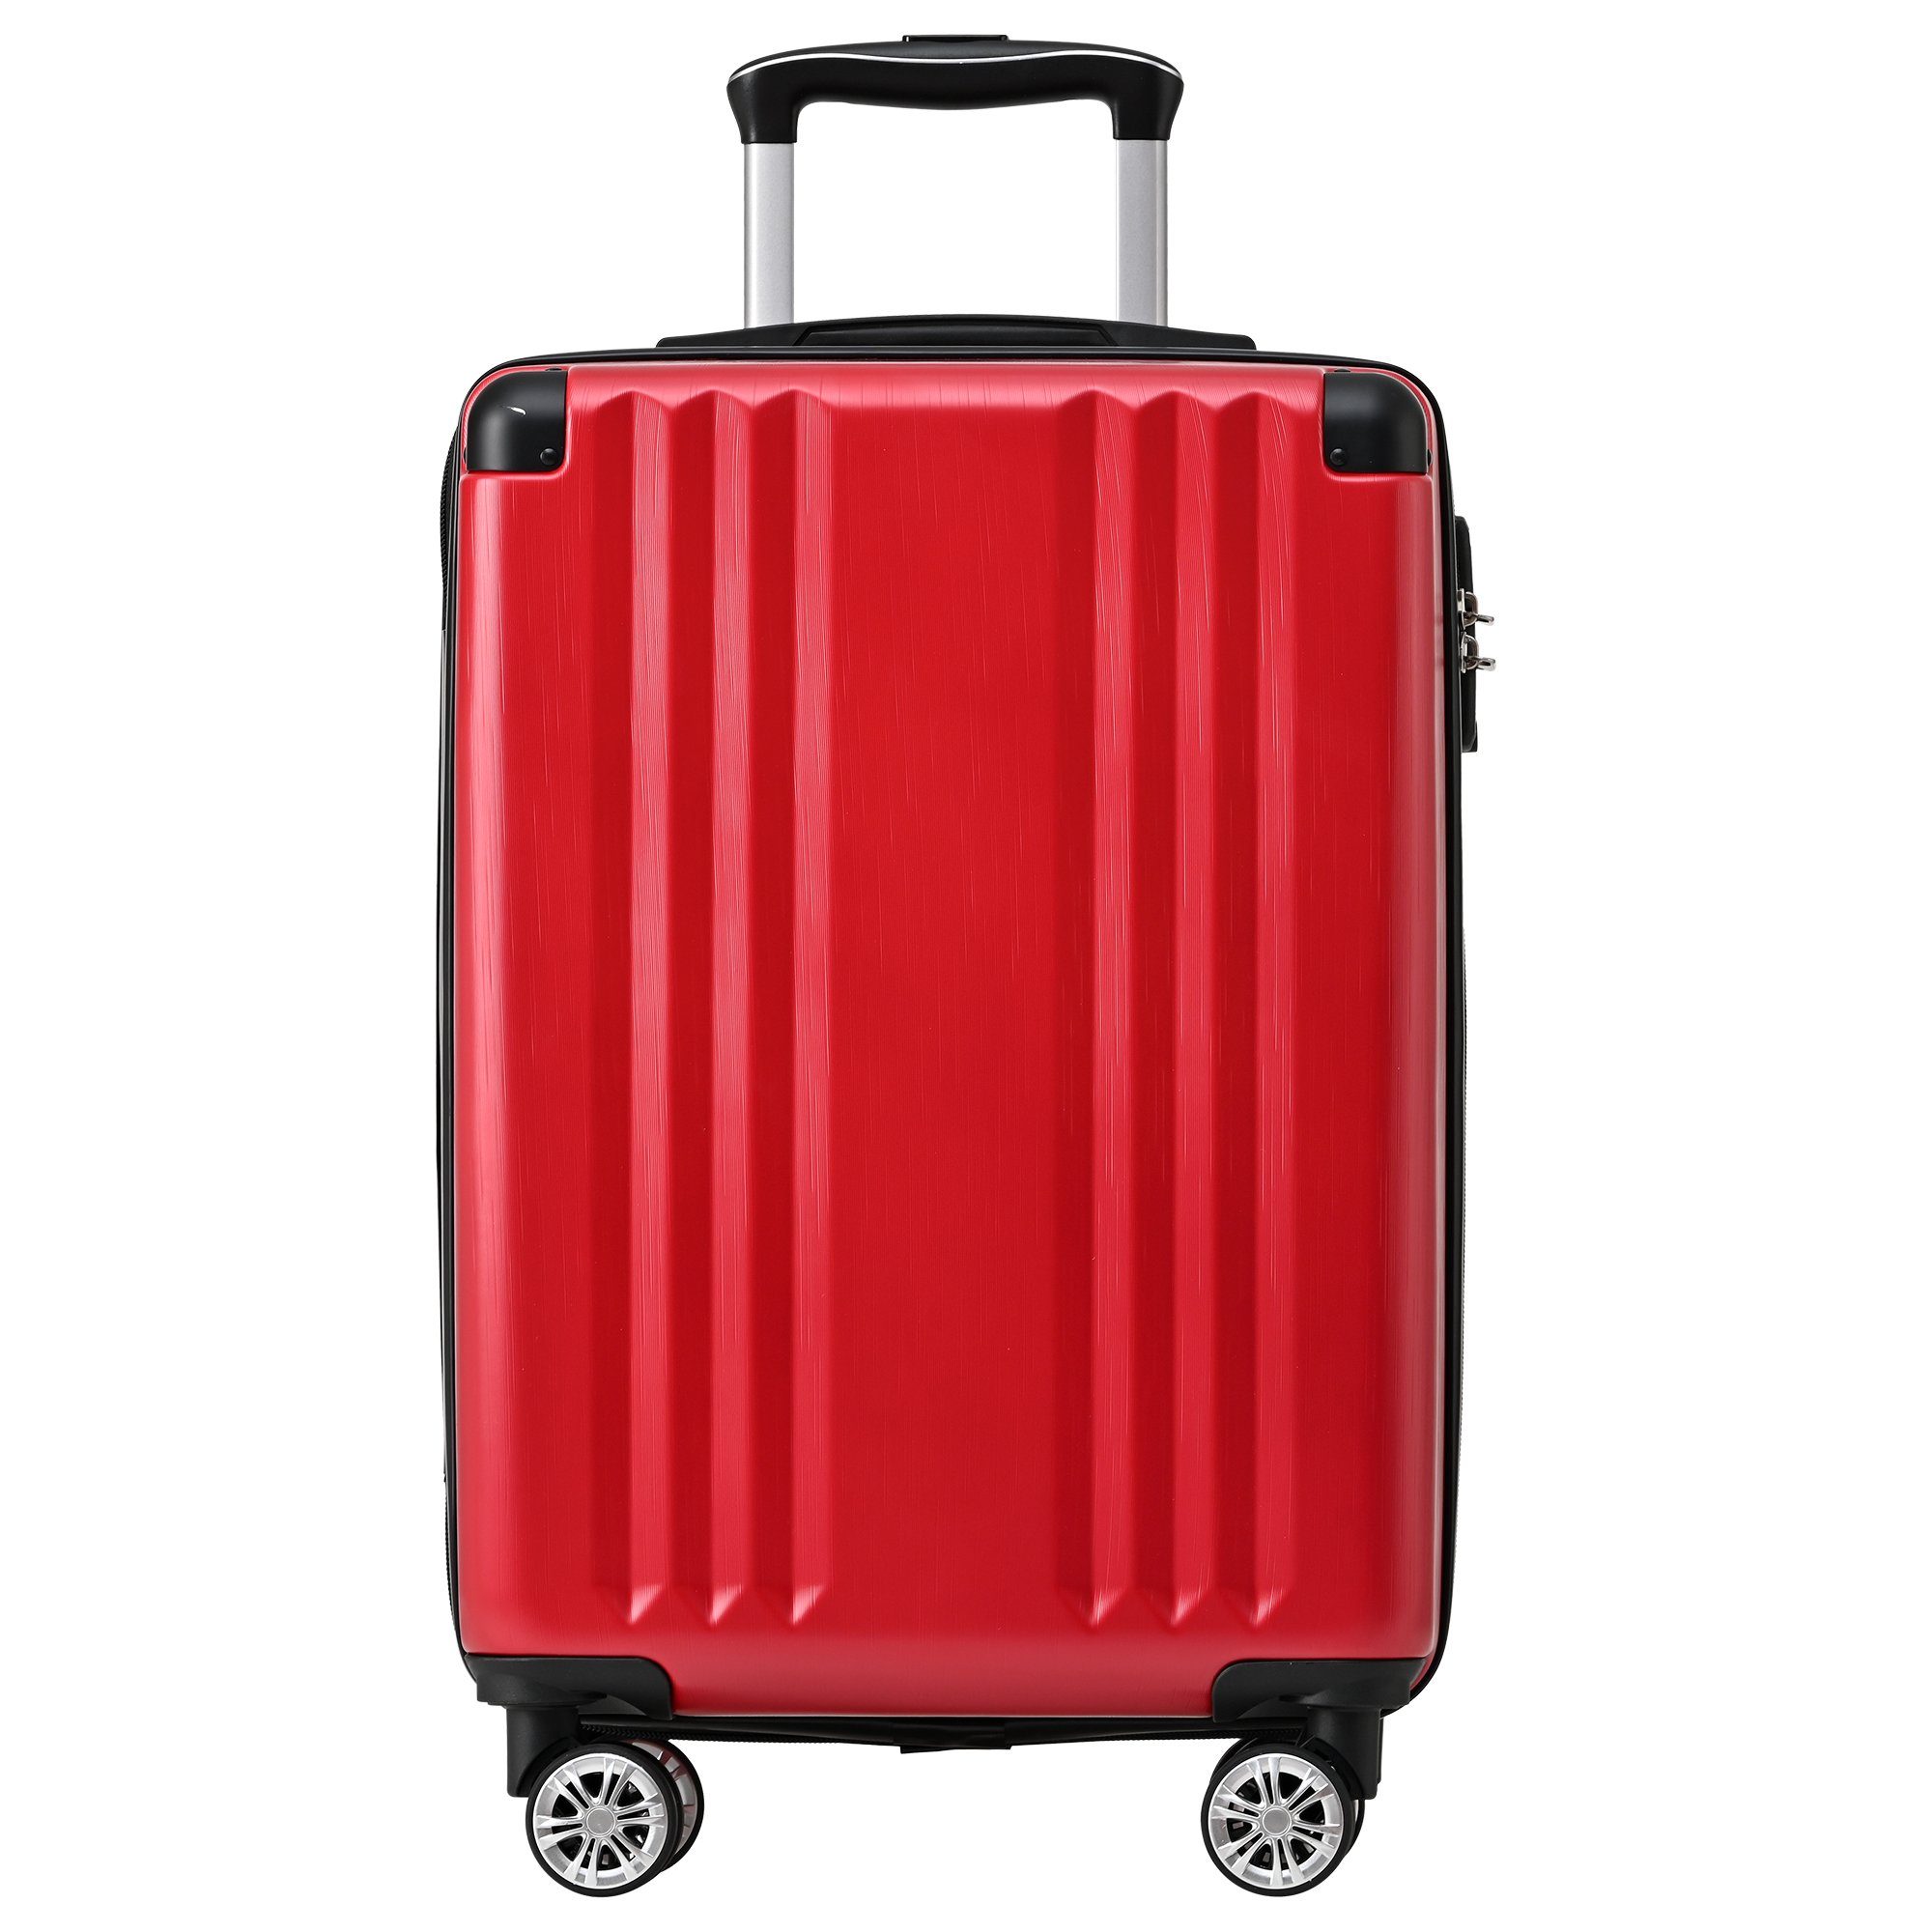 Handgepäck-Trolley ABS-Material, Zollschloss, 4 Rollen, M-Größe:56.5*37.5*22.5 TSA Rot Reisekoffer Ulife